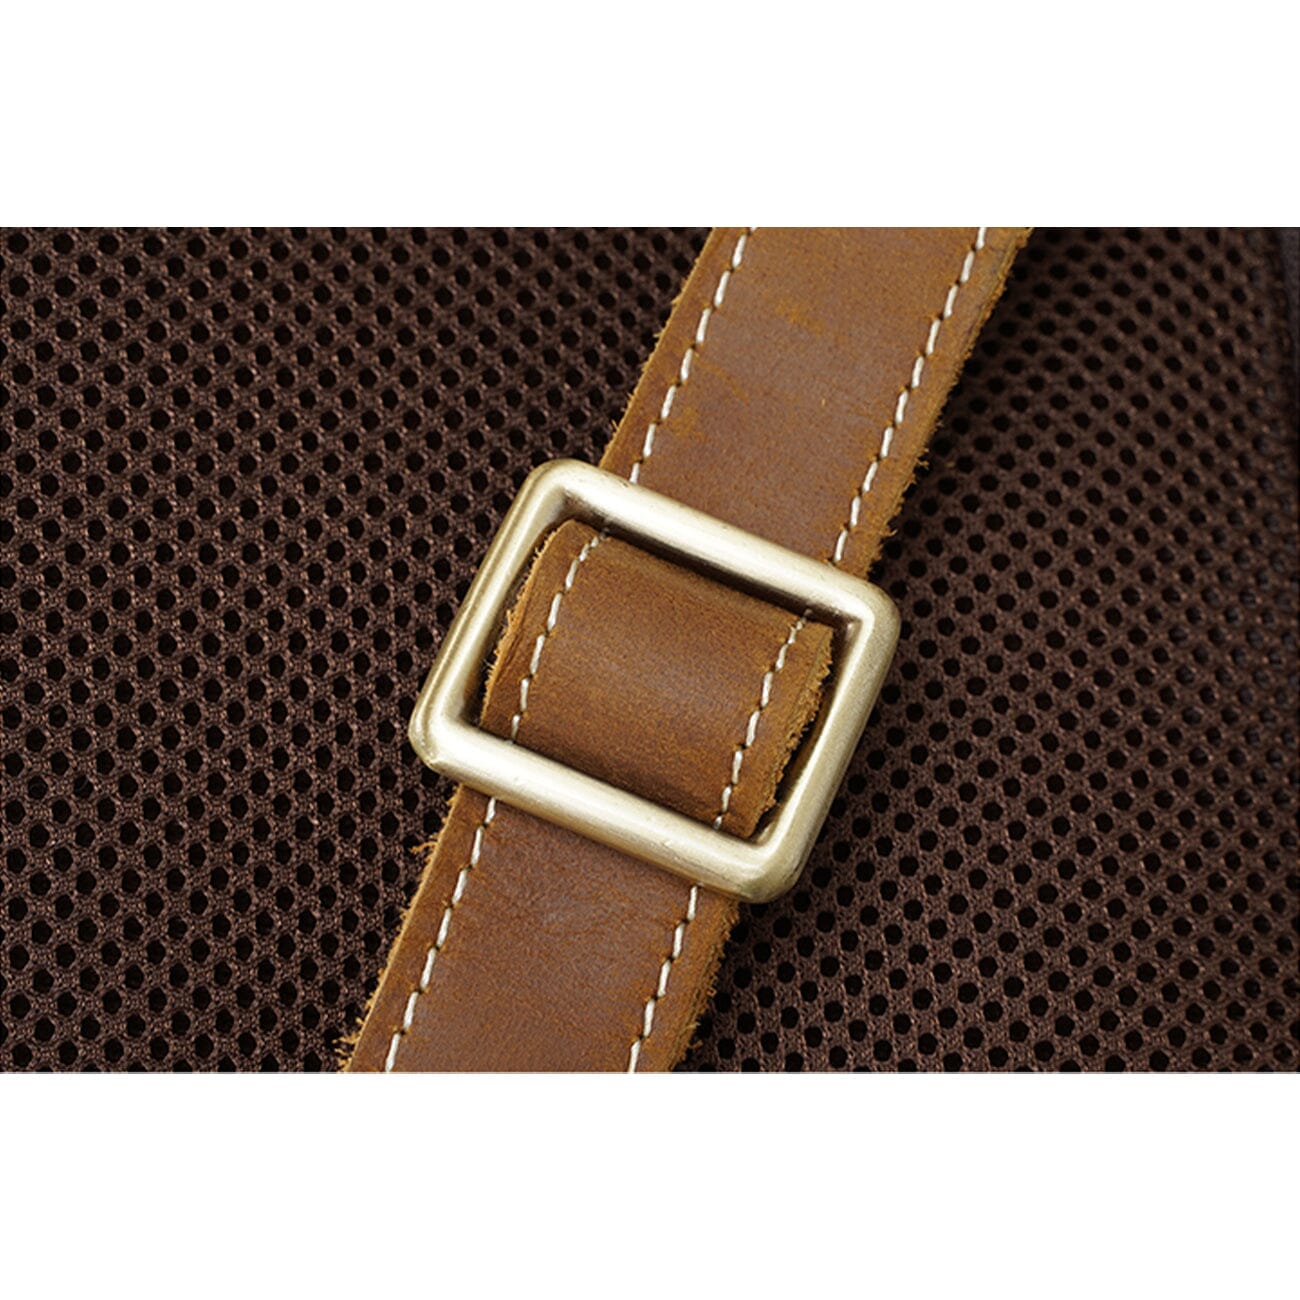 adjustable shoulder strap buckle of a genuine leather backpack